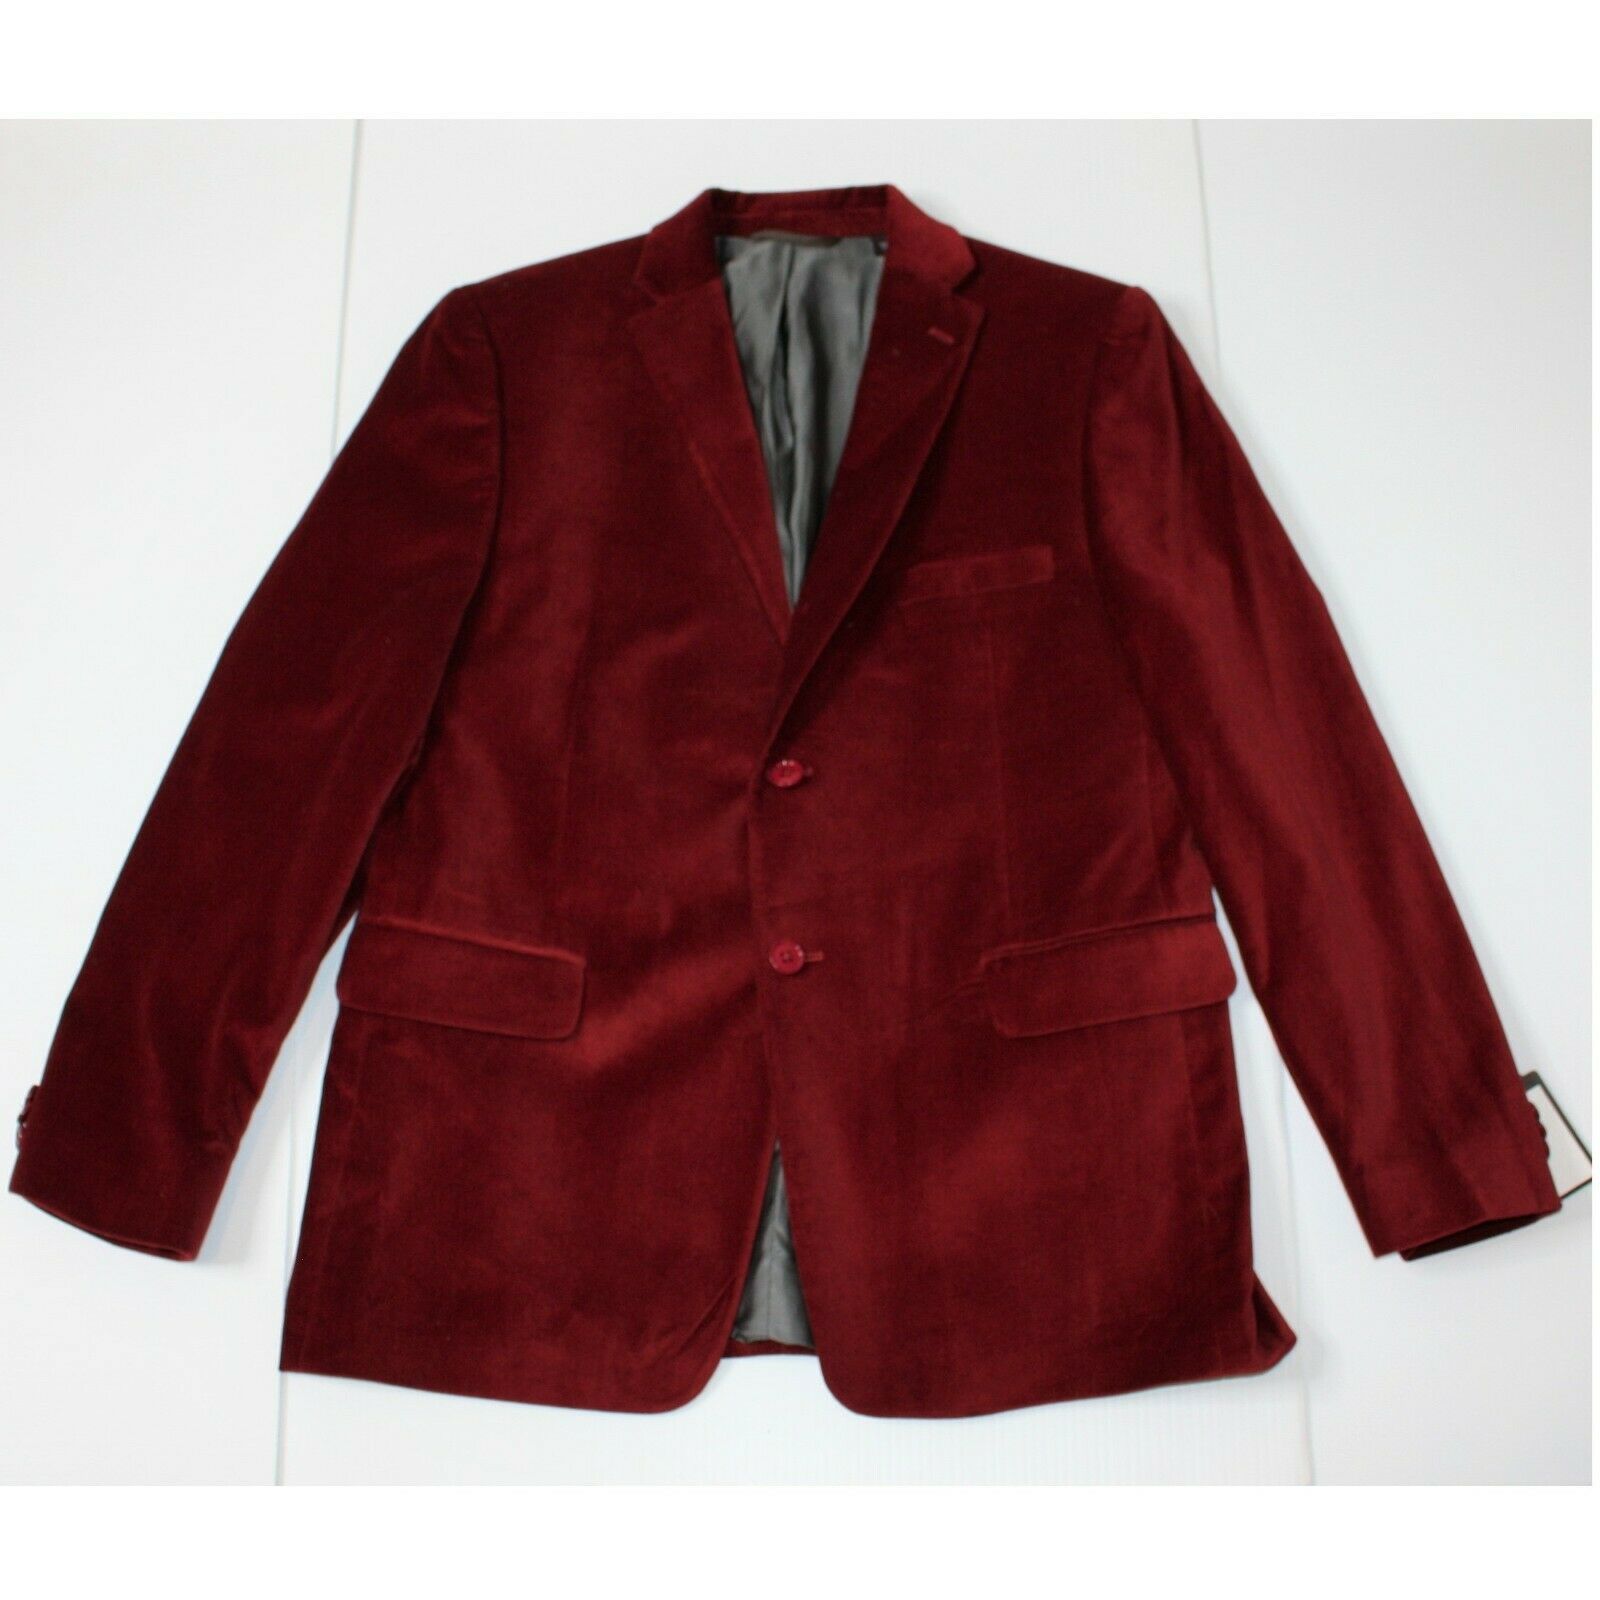 Michael Kors Boy's Burgundy Velveteen Blazer Sport Coat size 20 NWT - $79.99